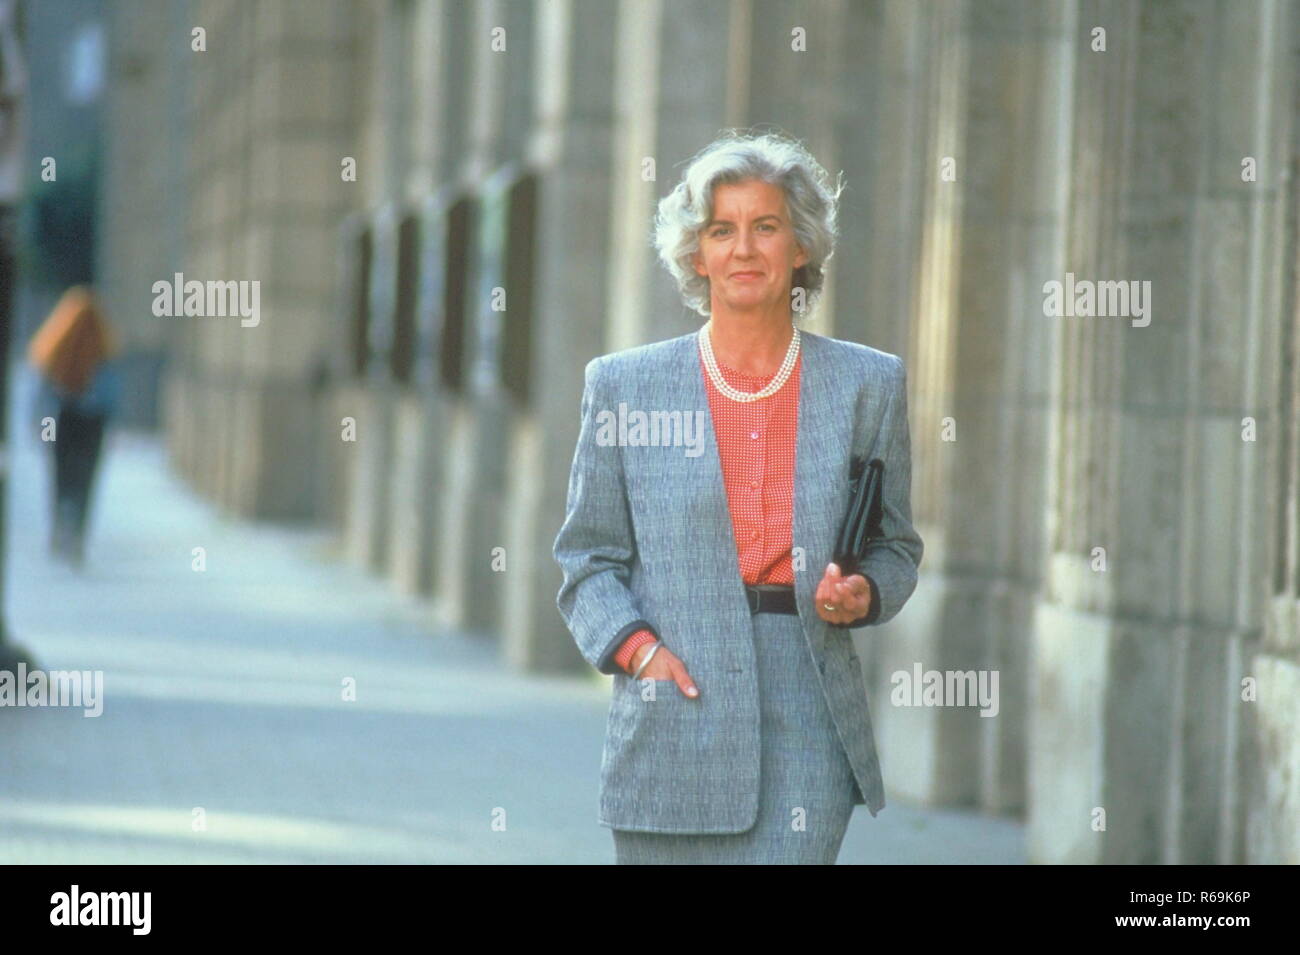 Portrait, Stadtszene, Frau, ca. 60 Jahre, bekleidet mit grauem Kostuem und Unterarmtasche geht auf dem Buergersteig an alten Haeuserfassaden vorbei Stock Photo